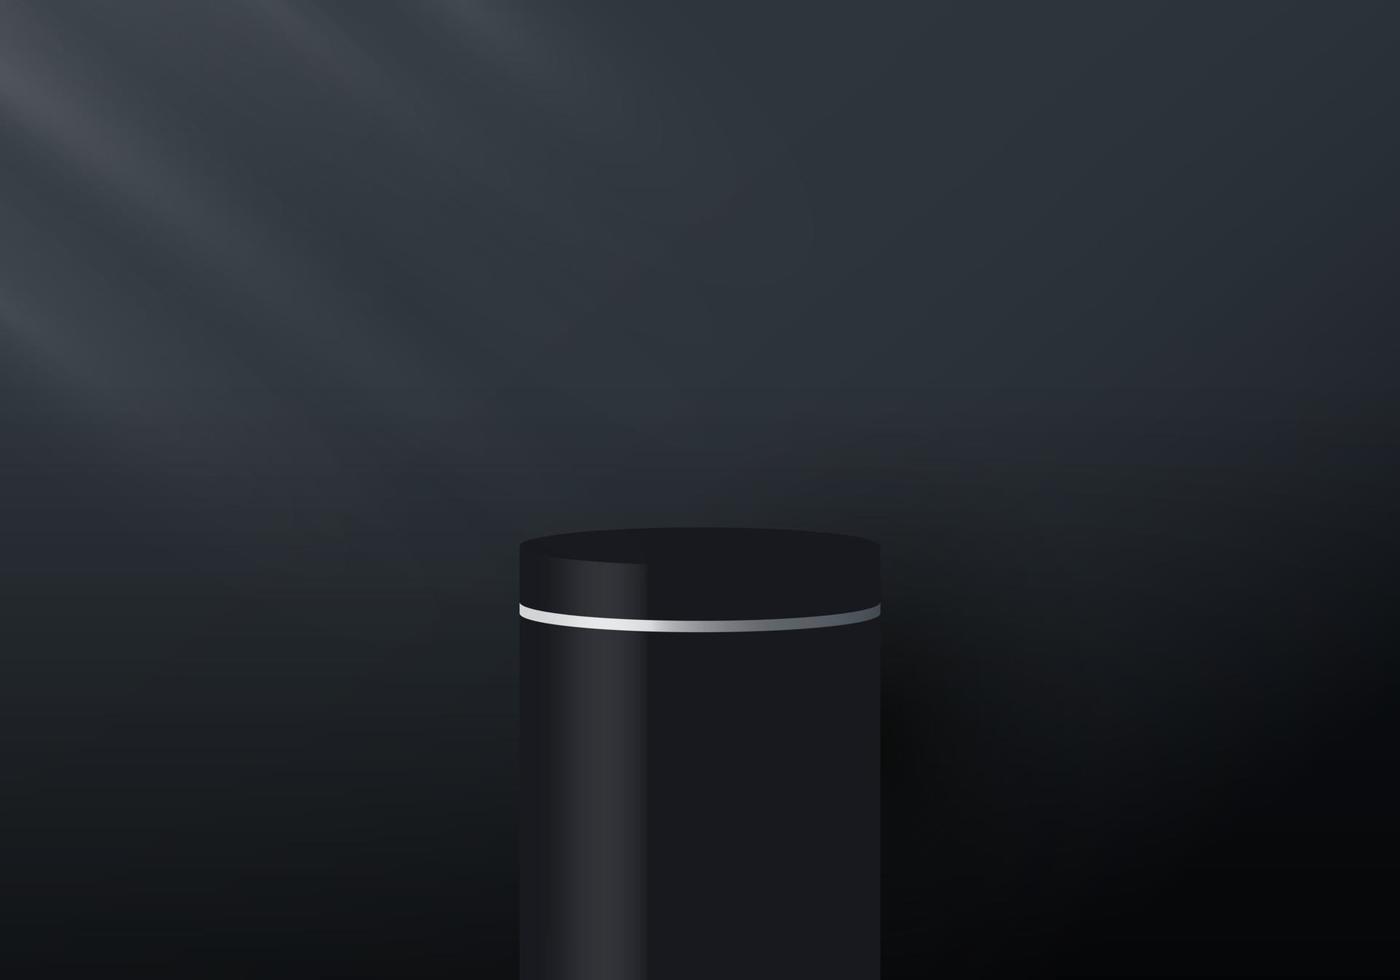 Tela de pedestal 3D realista em preto e branco em fundo escuro com iluminação vetor